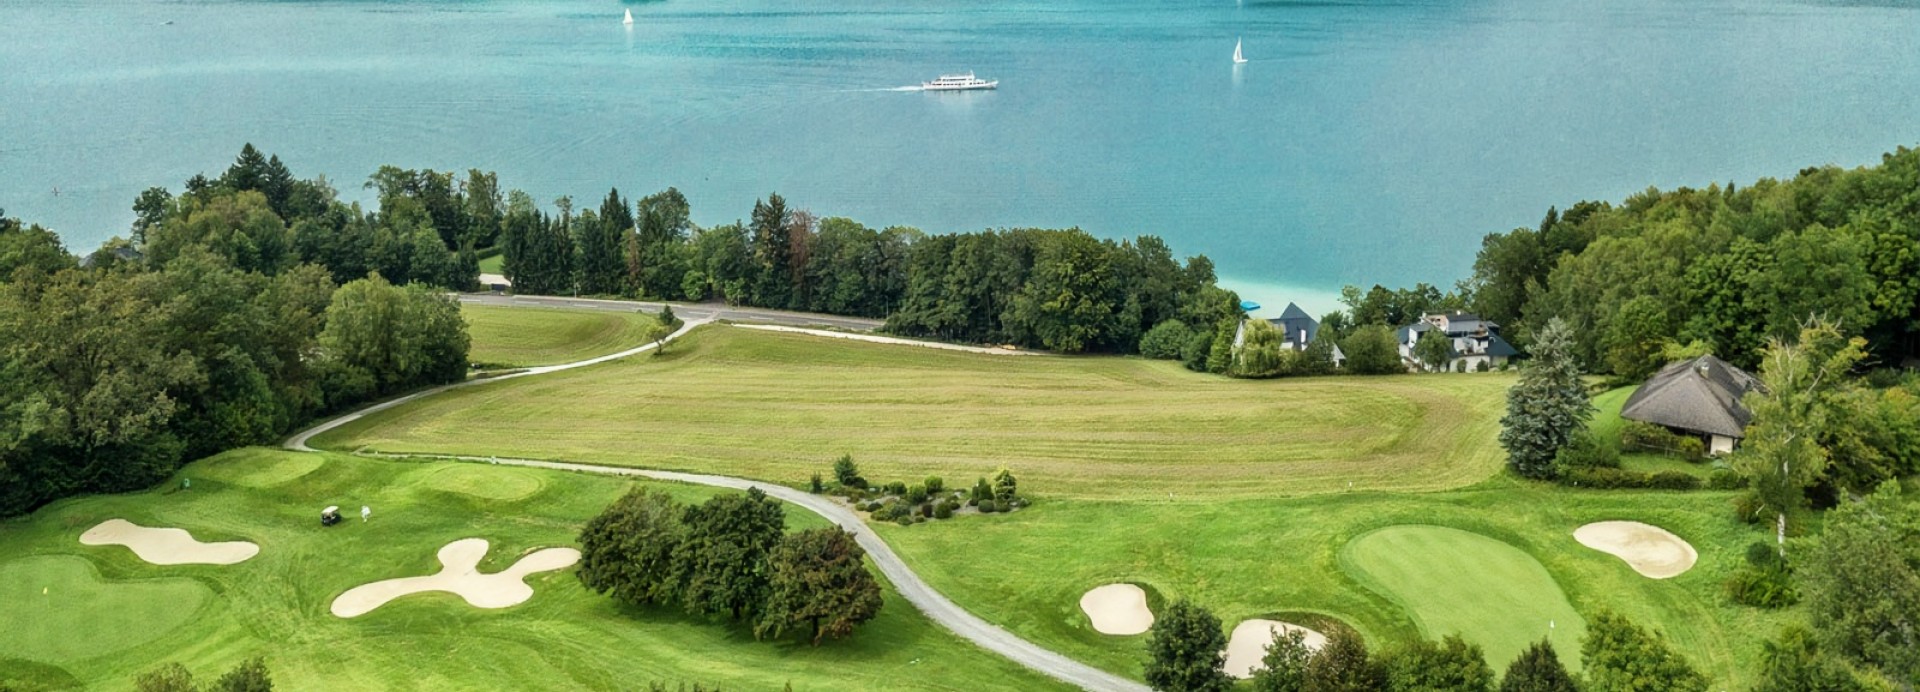 Kärntner Golfclub Dellach  | Golfové zájezdy, golfová dovolená, luxusní golf